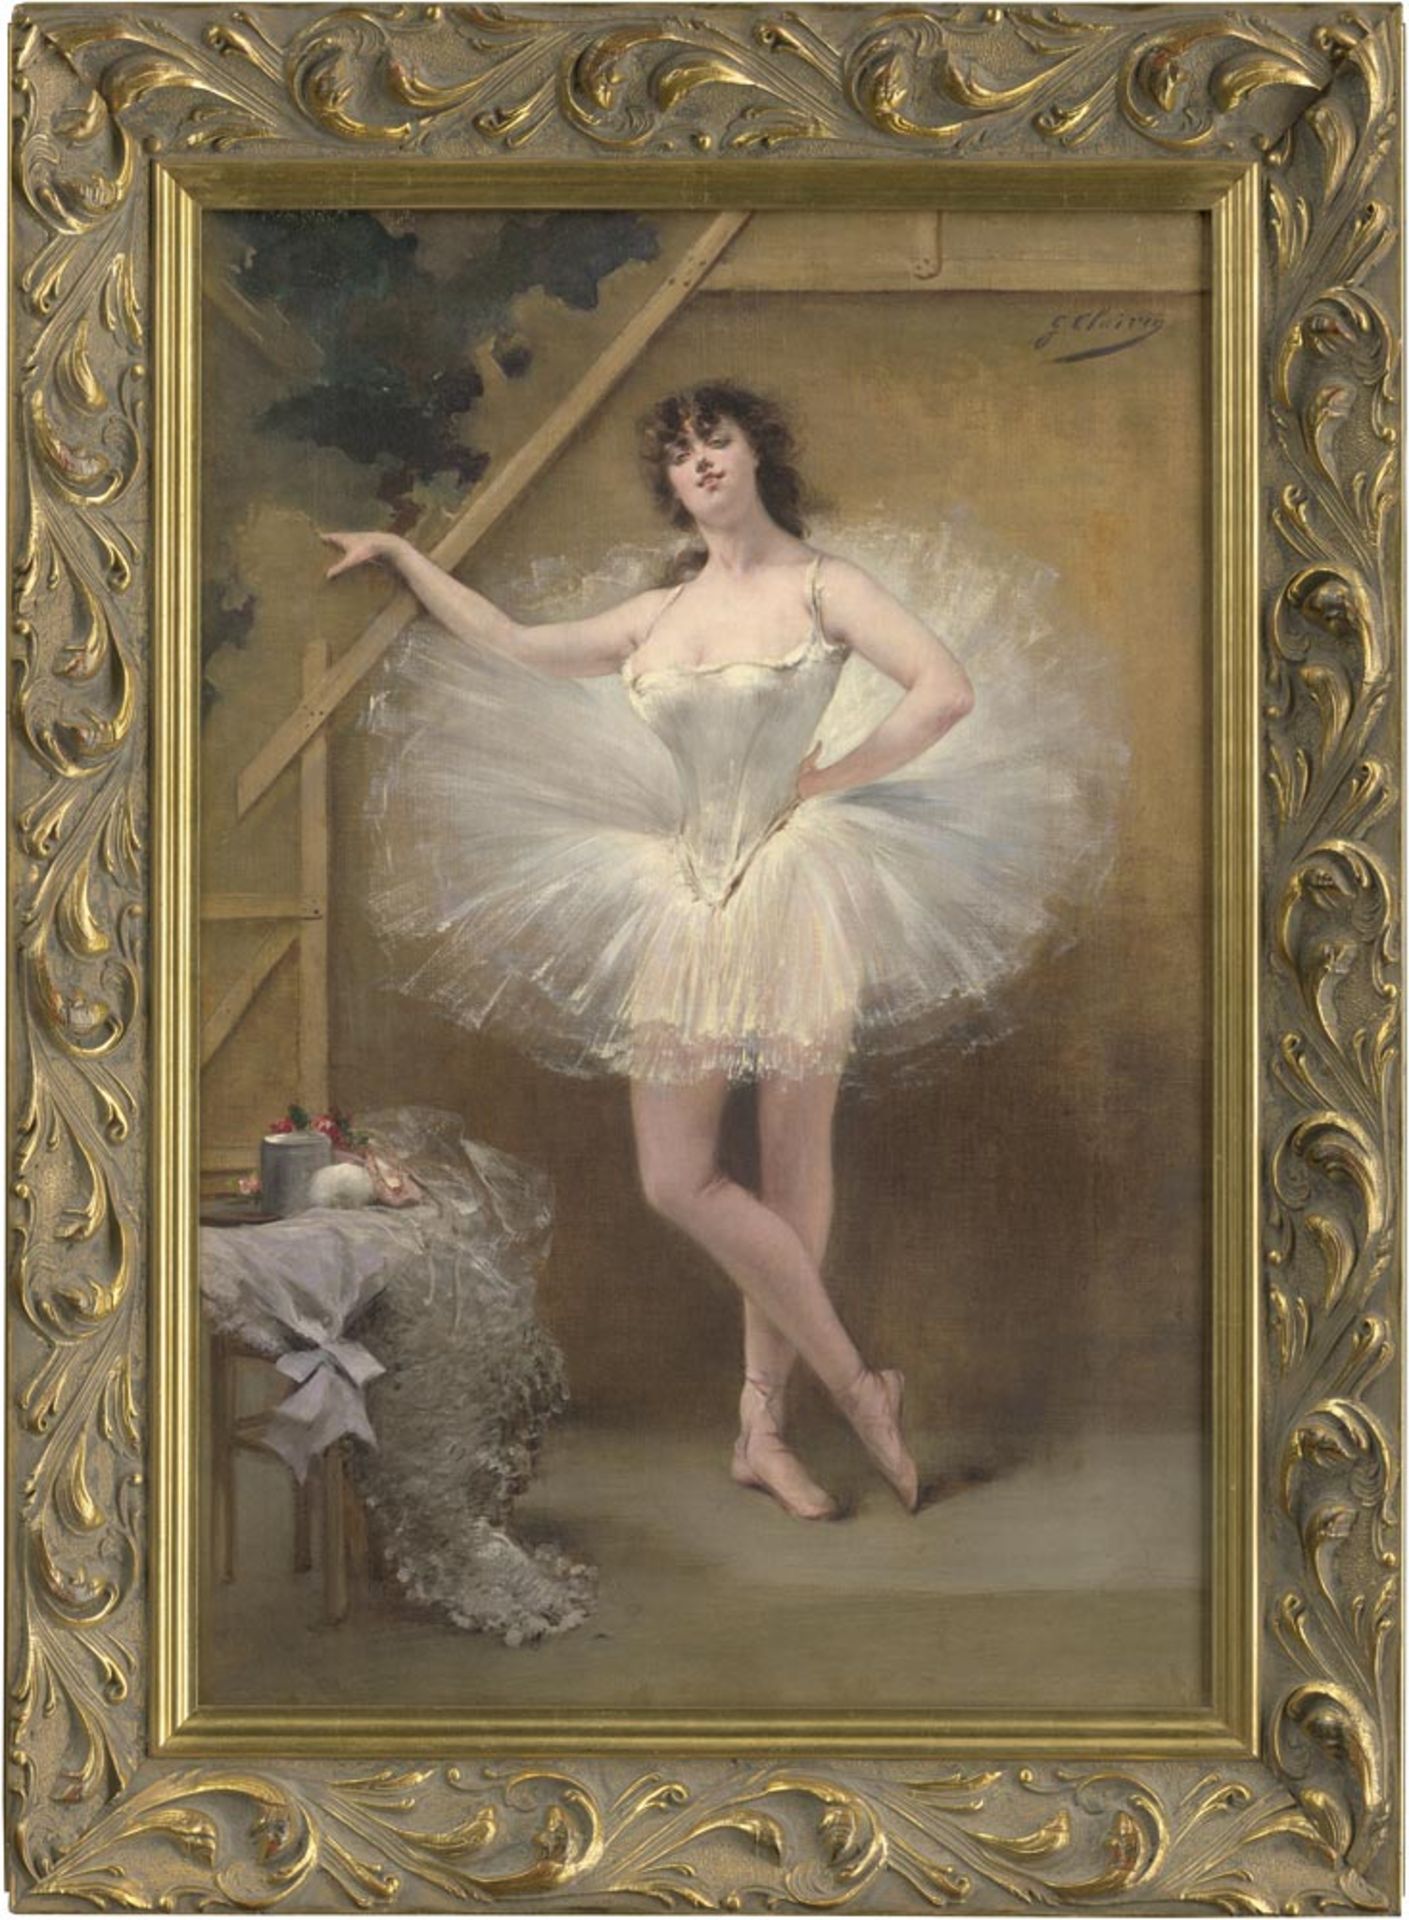 Clairin, Georges und Zucchi, Virginia: Die Tänzerin Virginia Zucchi. Öl auf Leinwand, oben rechtes